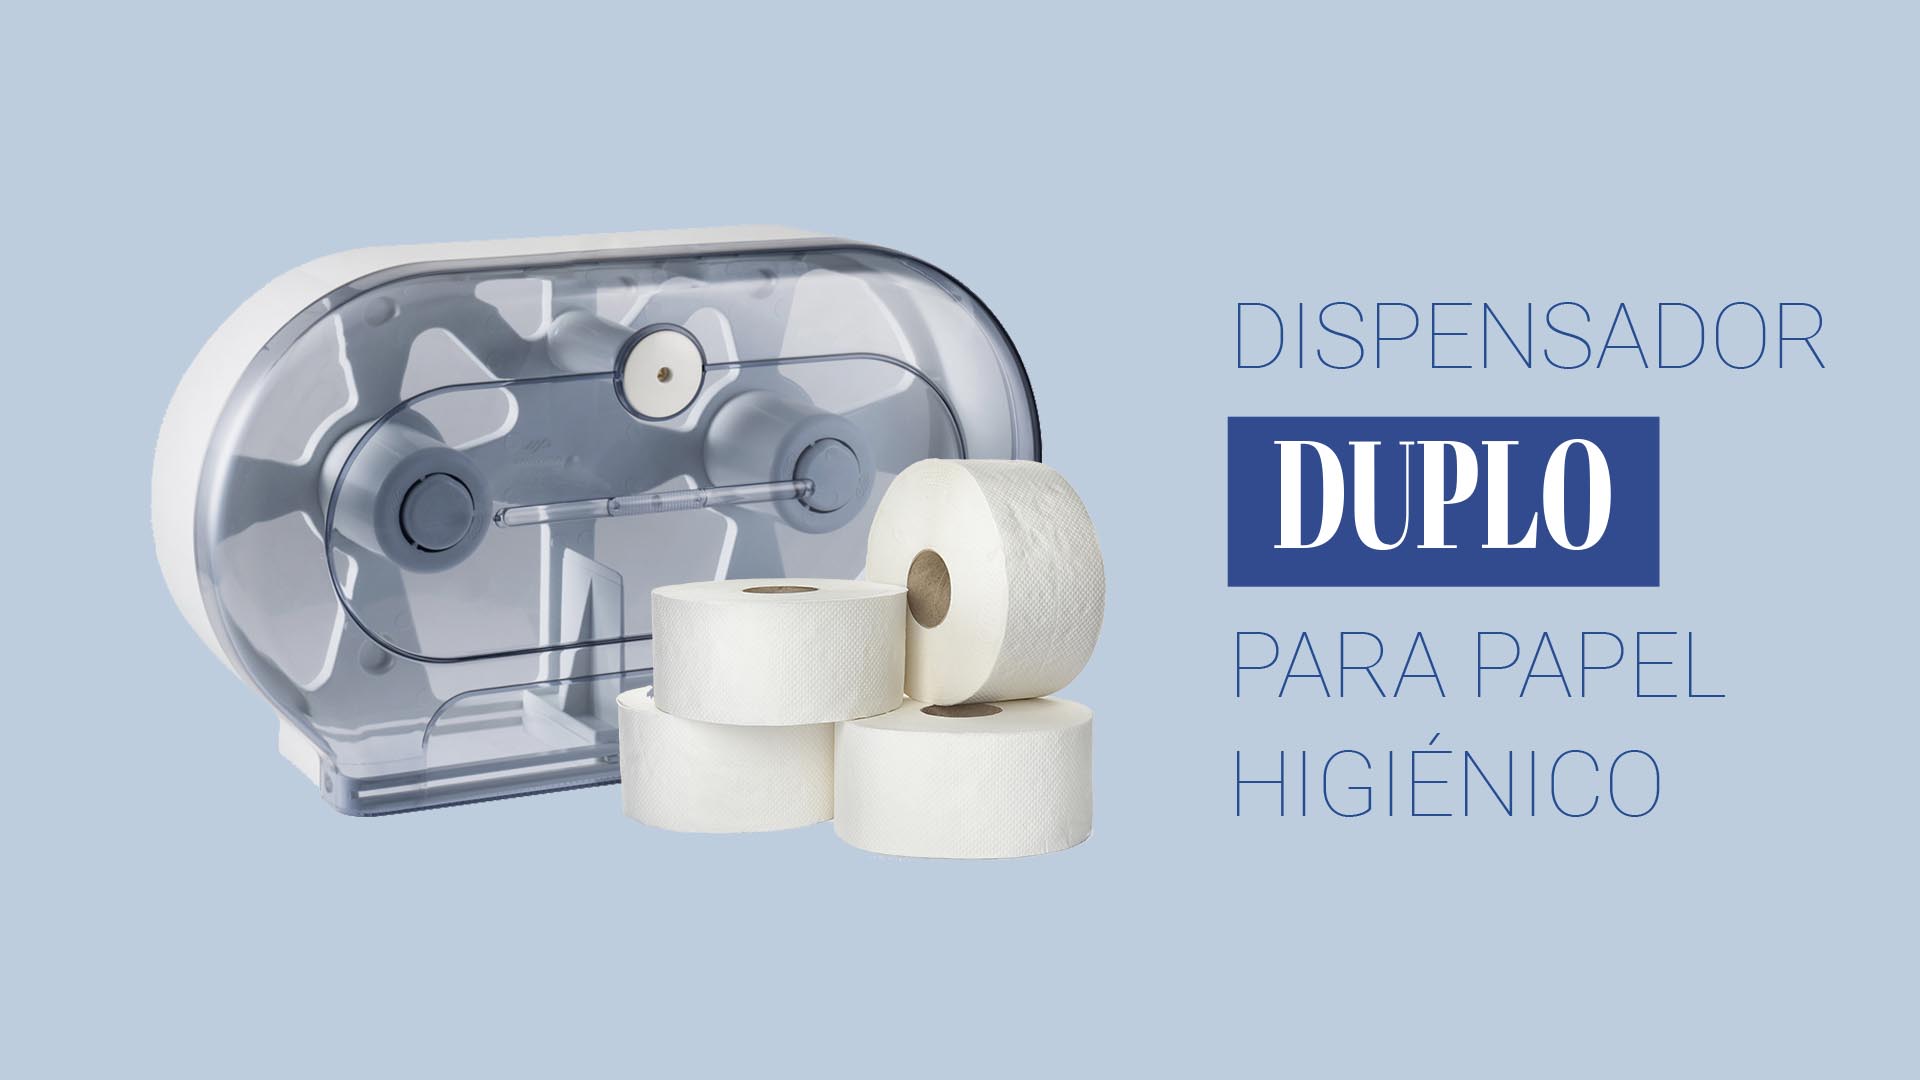 DUPLO, el dispensador de papel higiénico doble